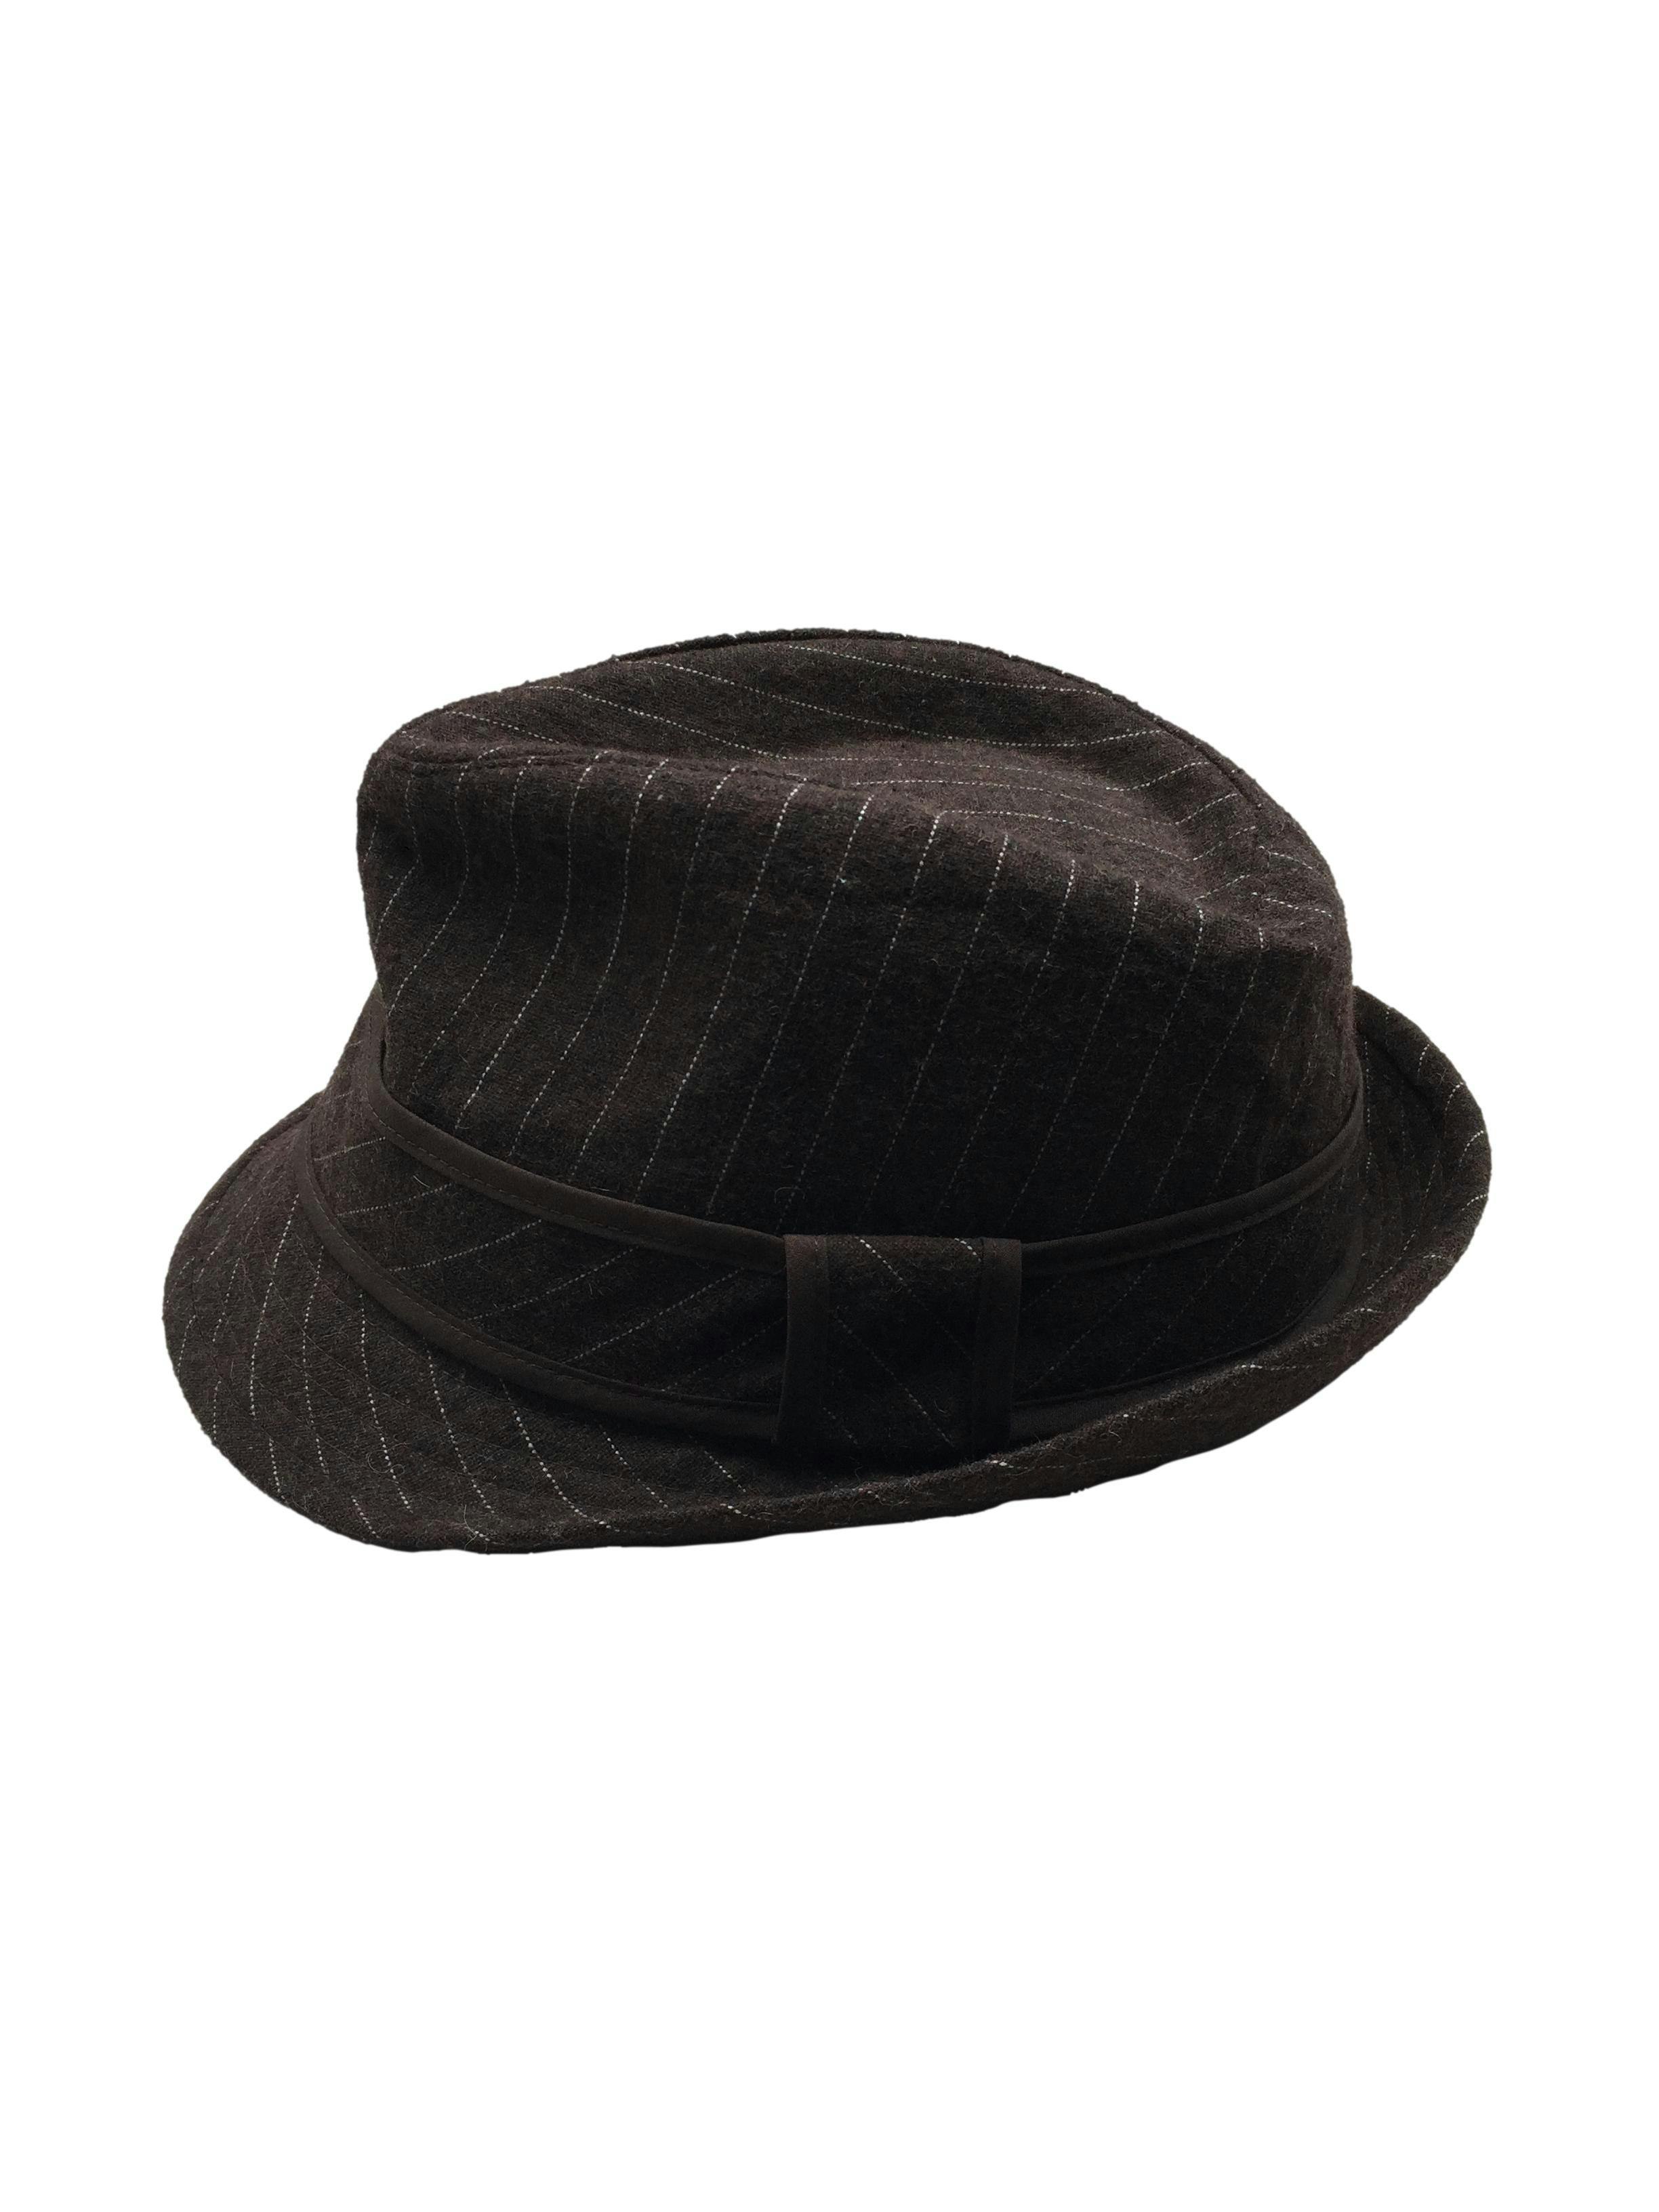 Sombrero marrón con lineas blancas y forro, ala 4cm.